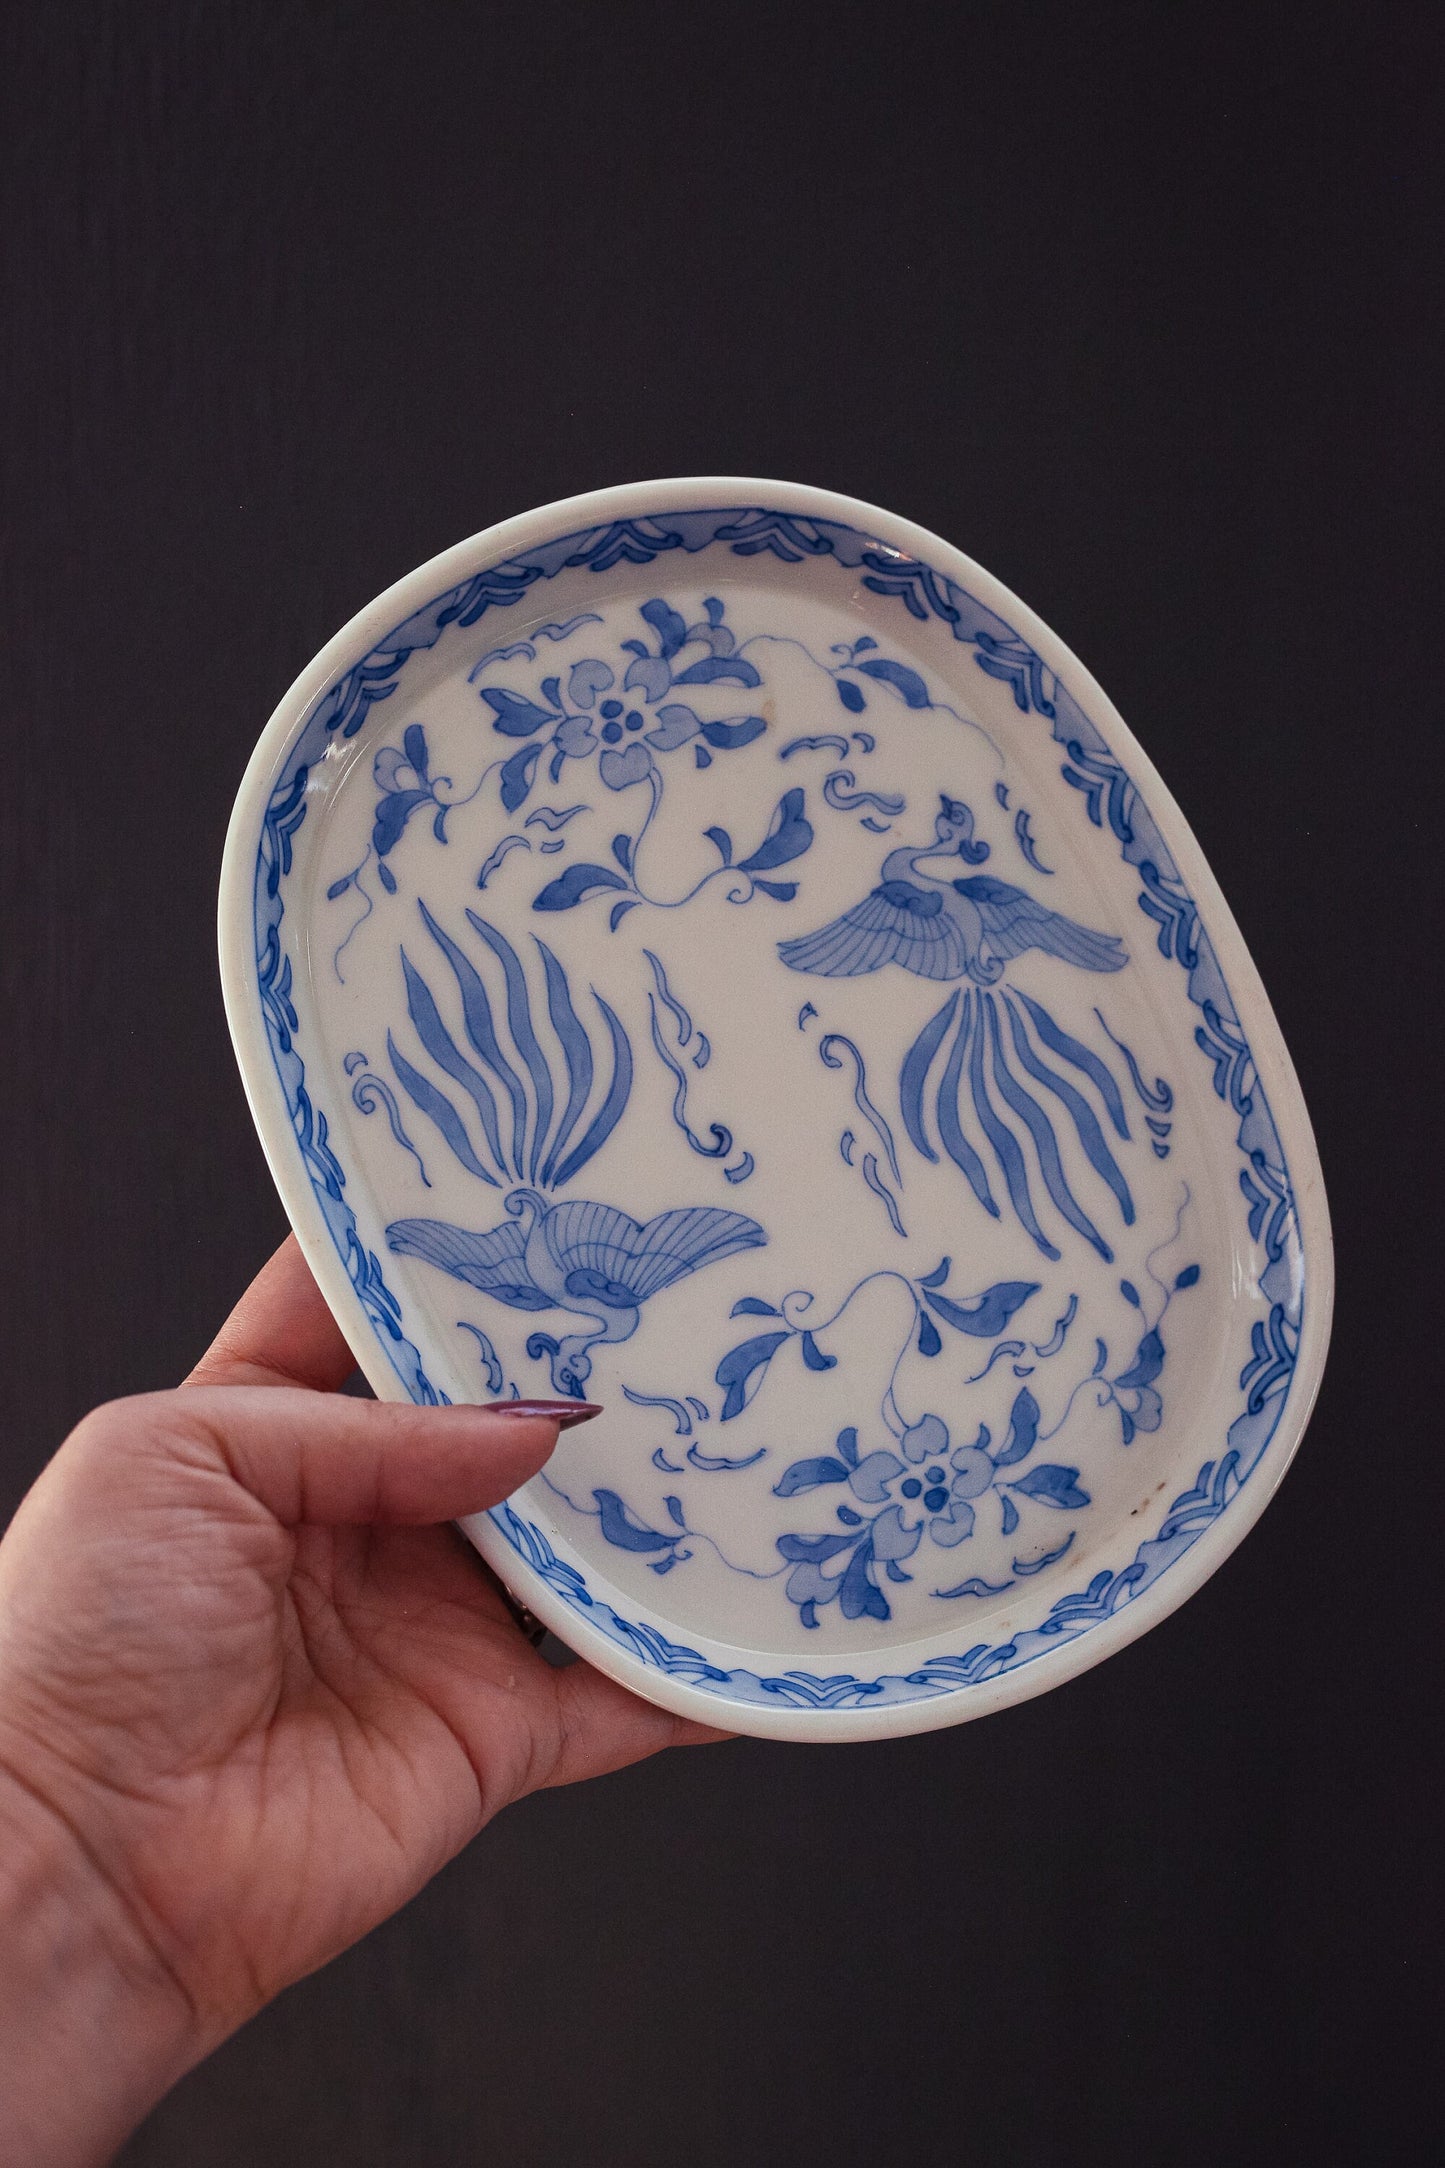 Pair of Blue White Phoenix Porcelain Low Dishes - Vintage Japanese Porcelain Serving Plates